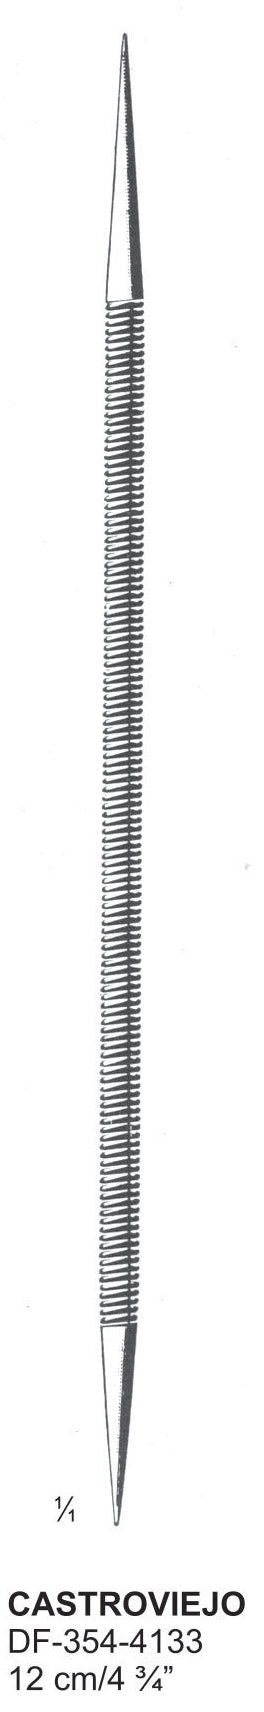 Castroviejo Lachrymal Dilators 12cm  (DF-354-4133) by Dr. Frigz